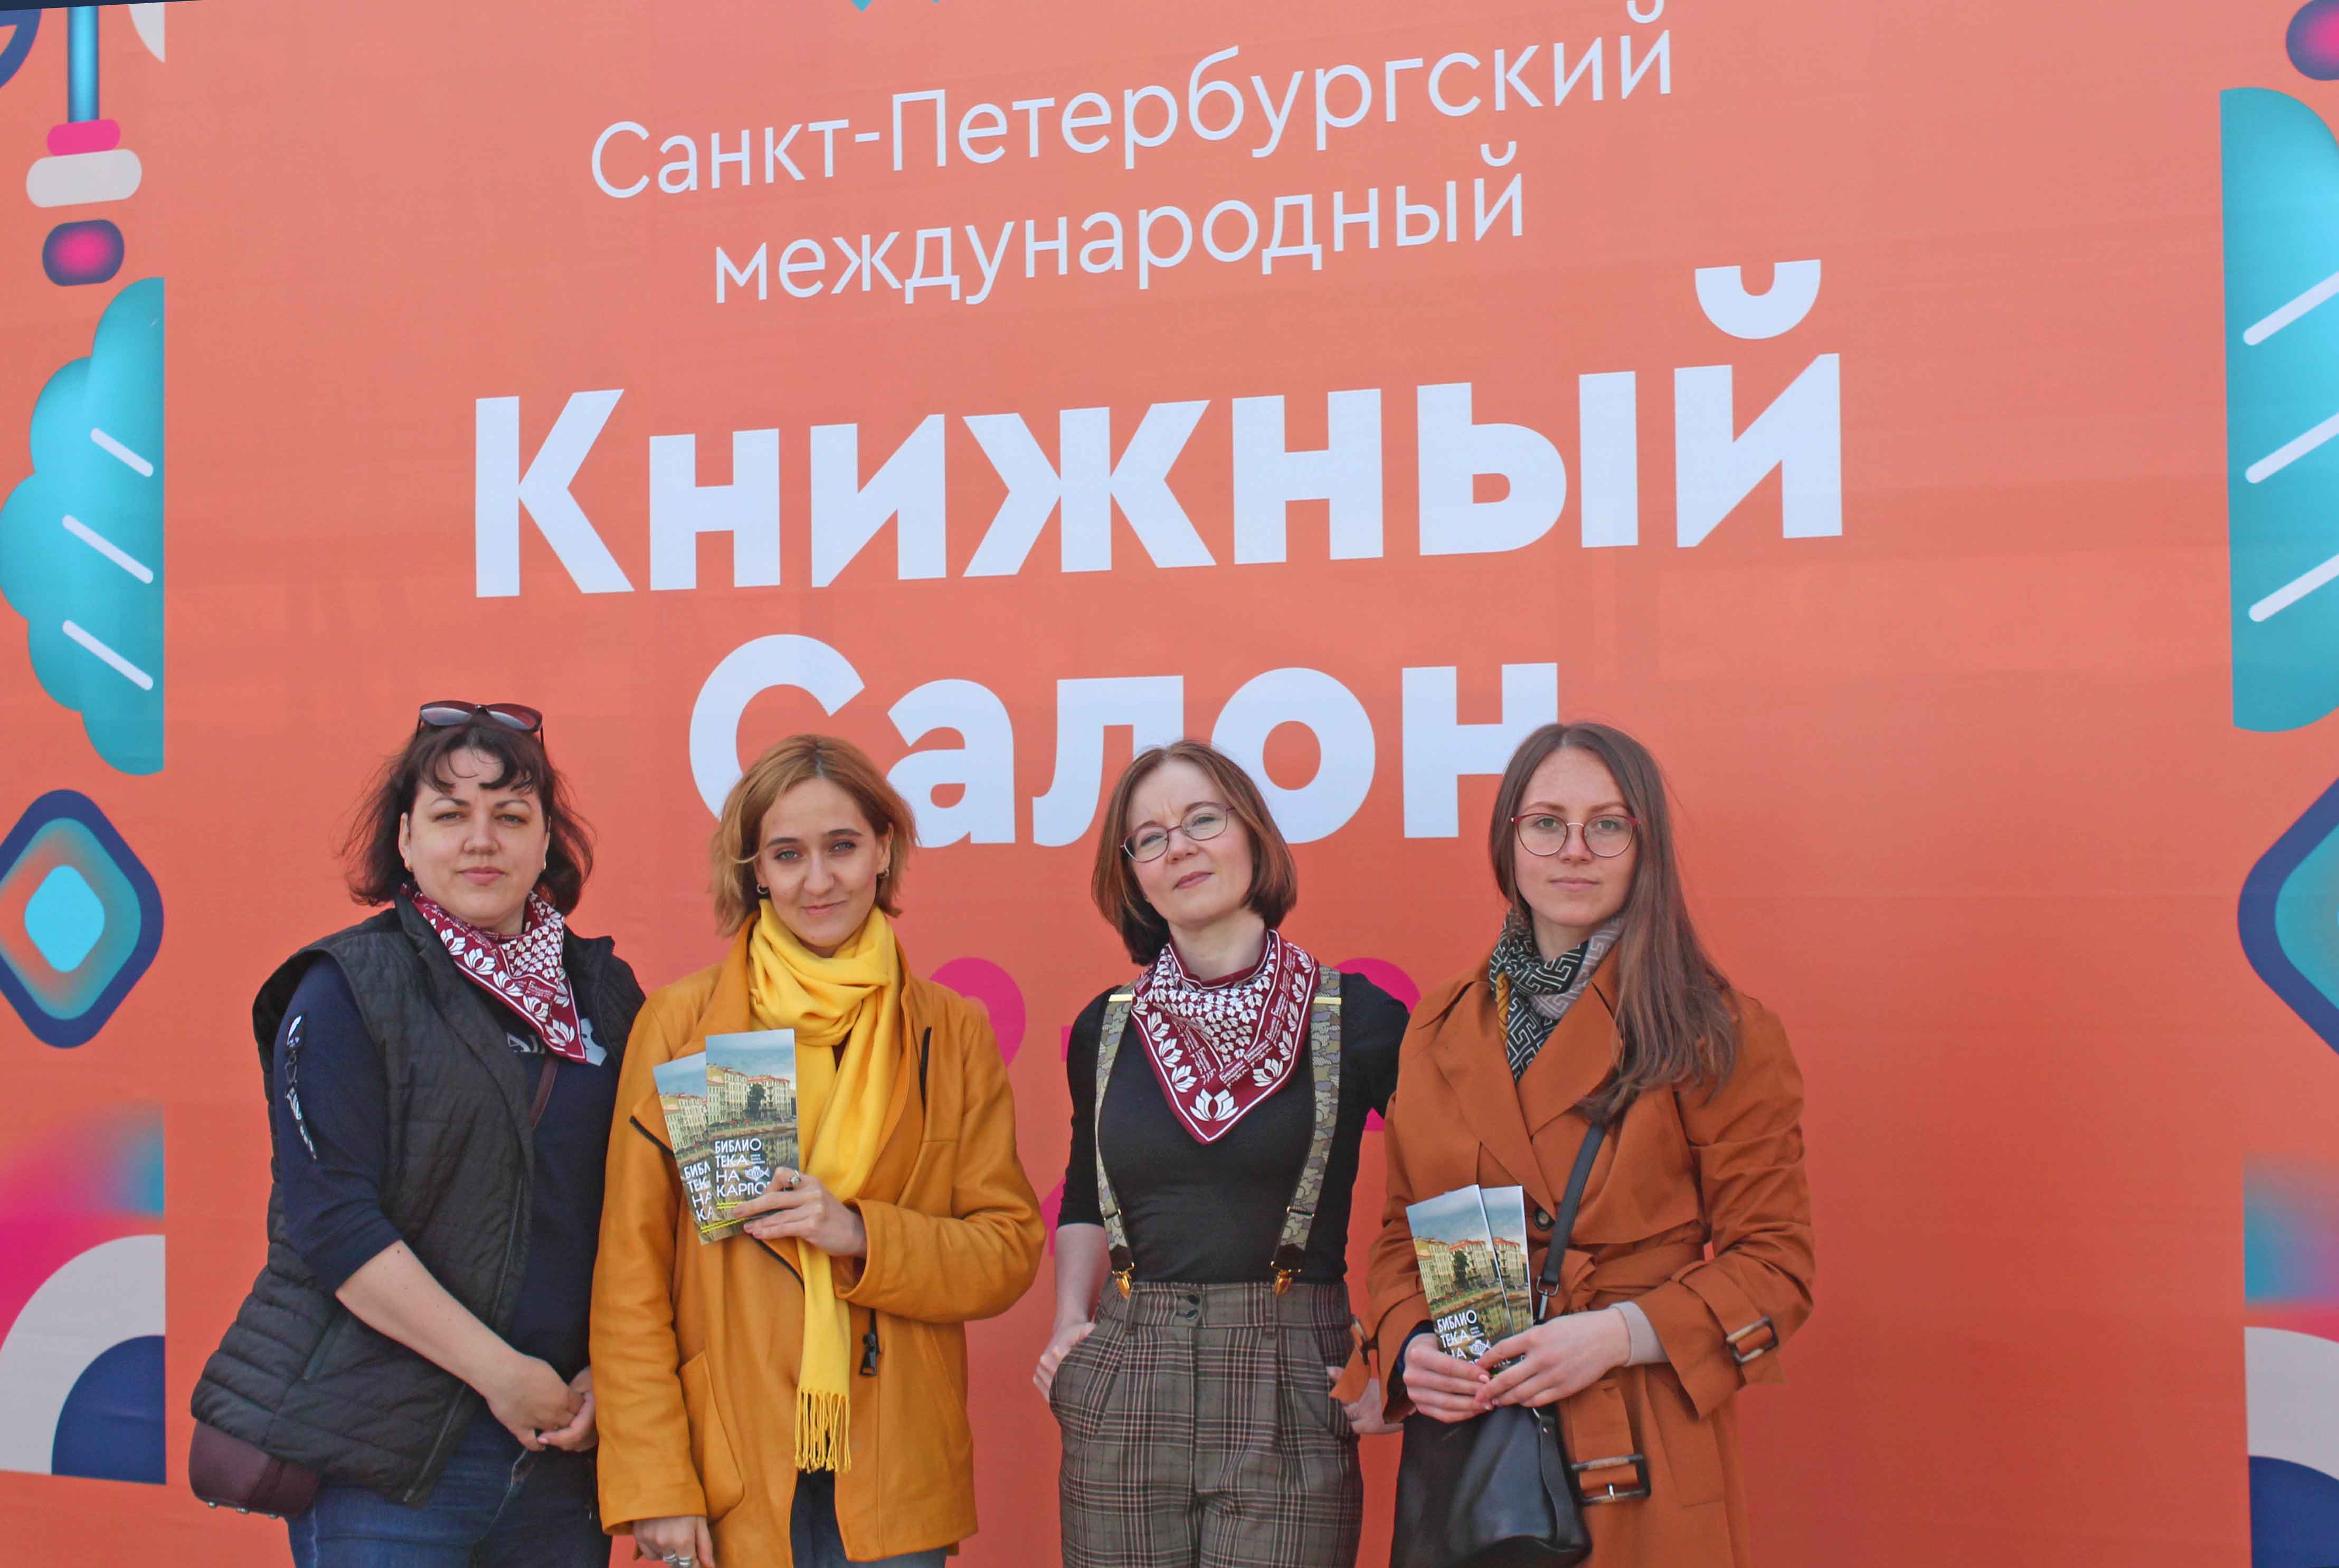 XVII Санкт-Петербургский международный книжный салон